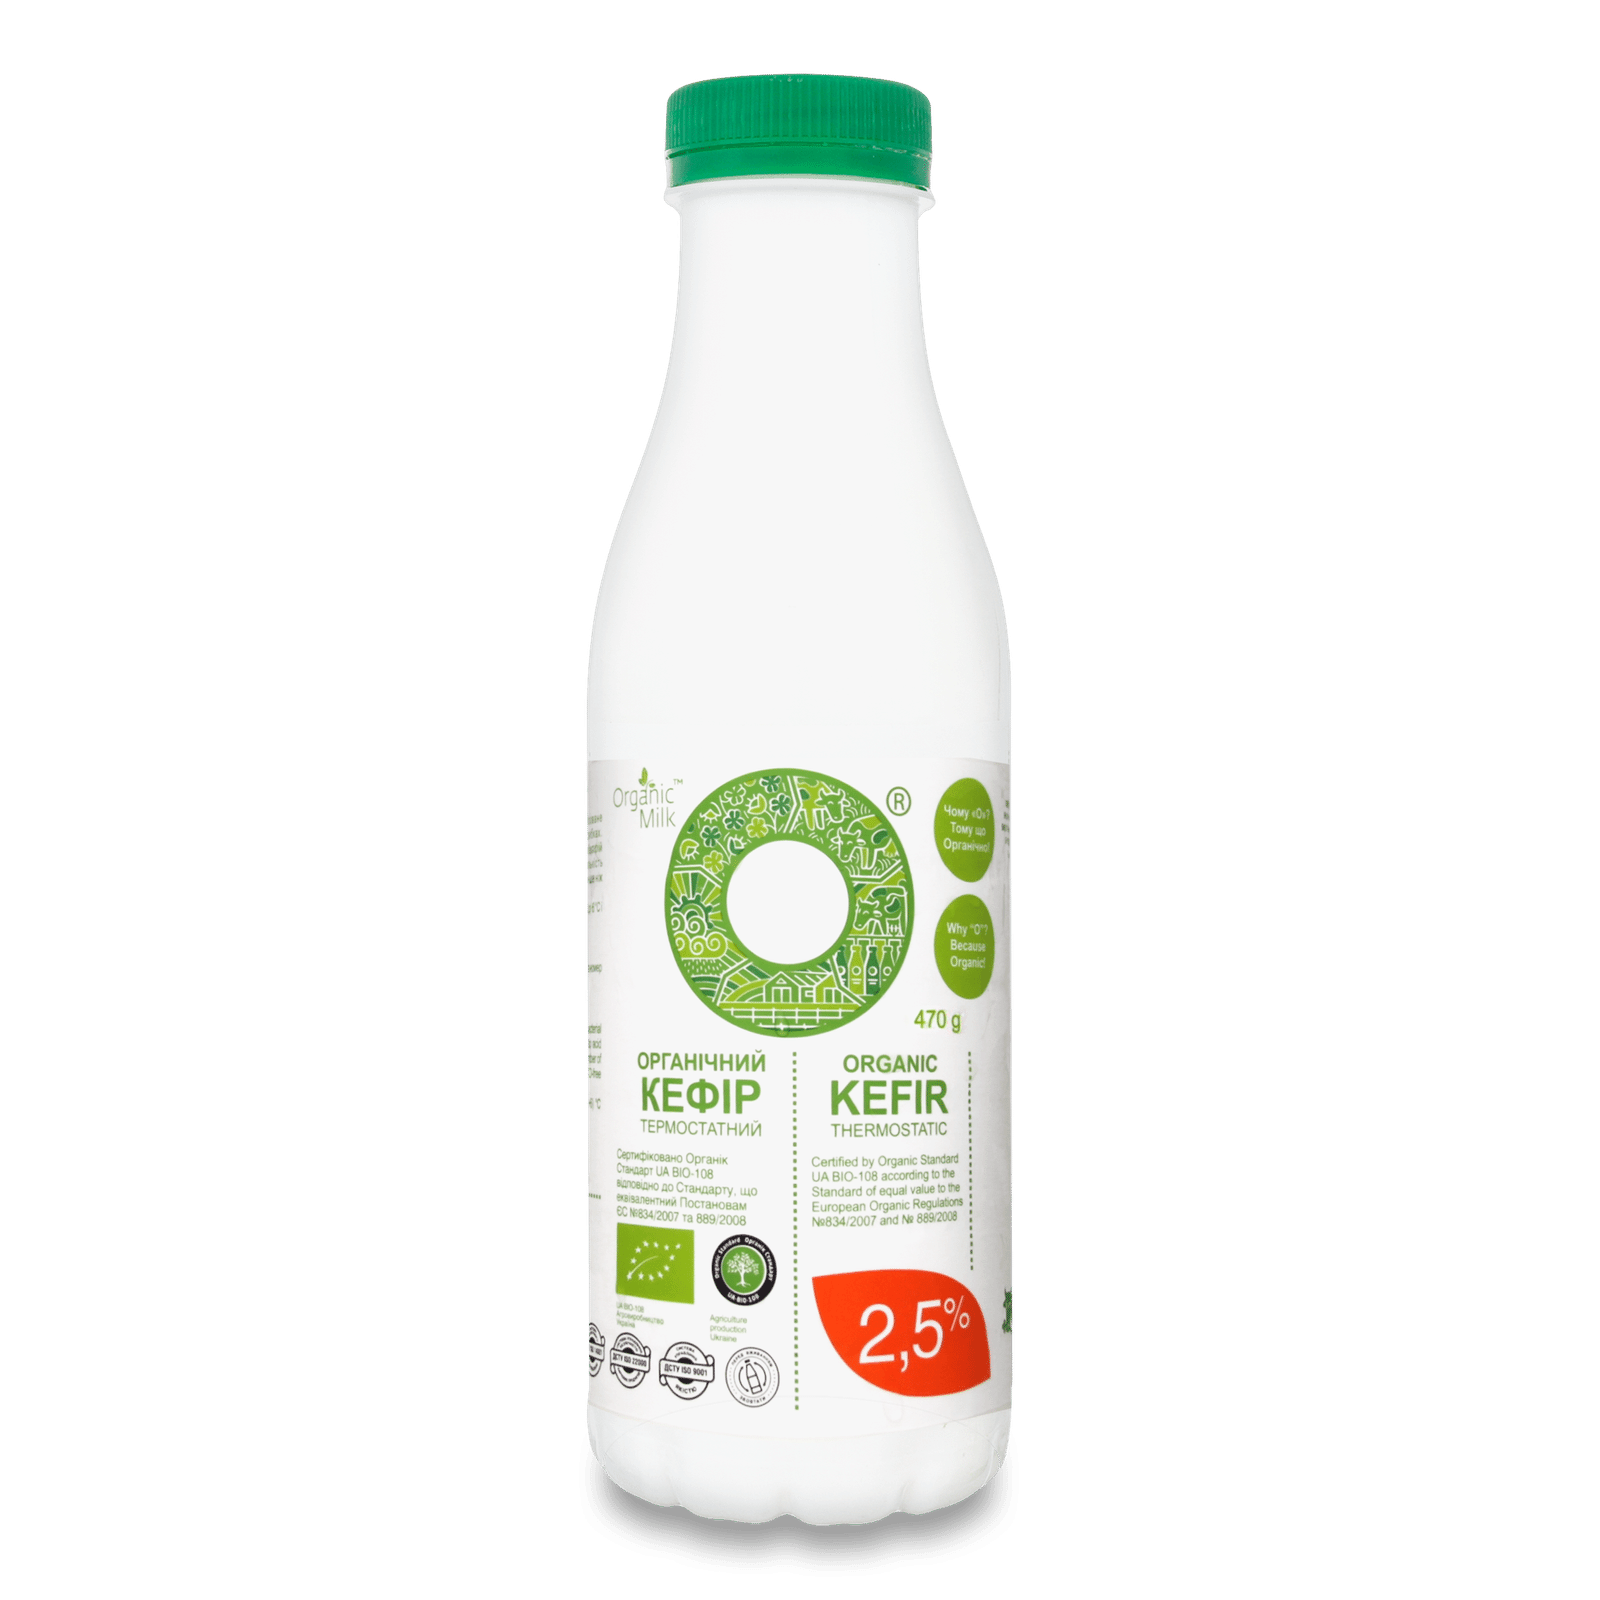 Кефір Organic Milk термостатний органічний 2,5% - 1